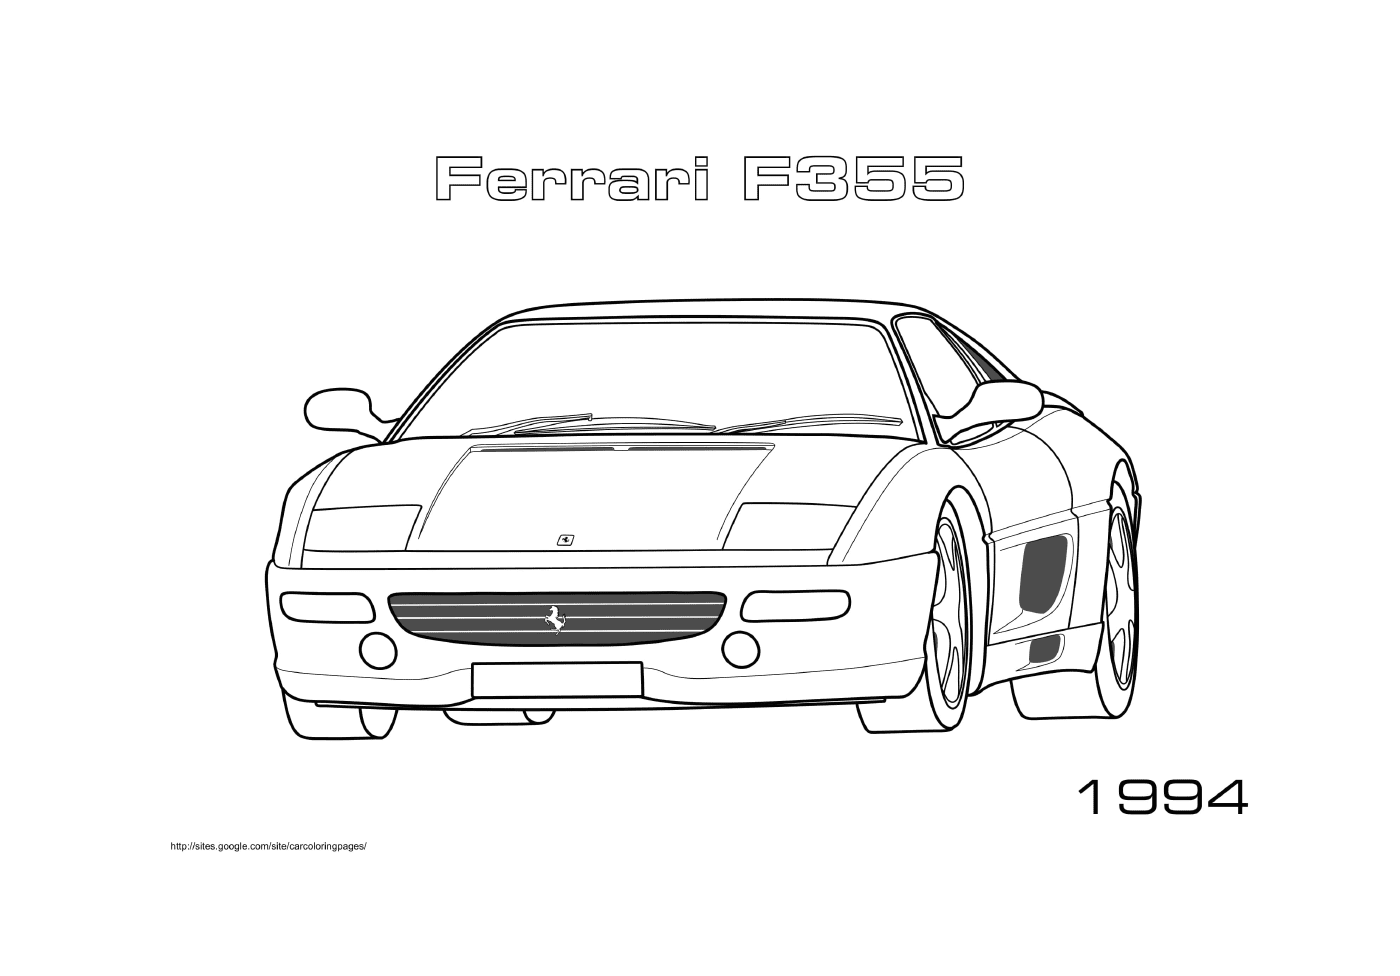   Voiture Ferrari F355 1994 